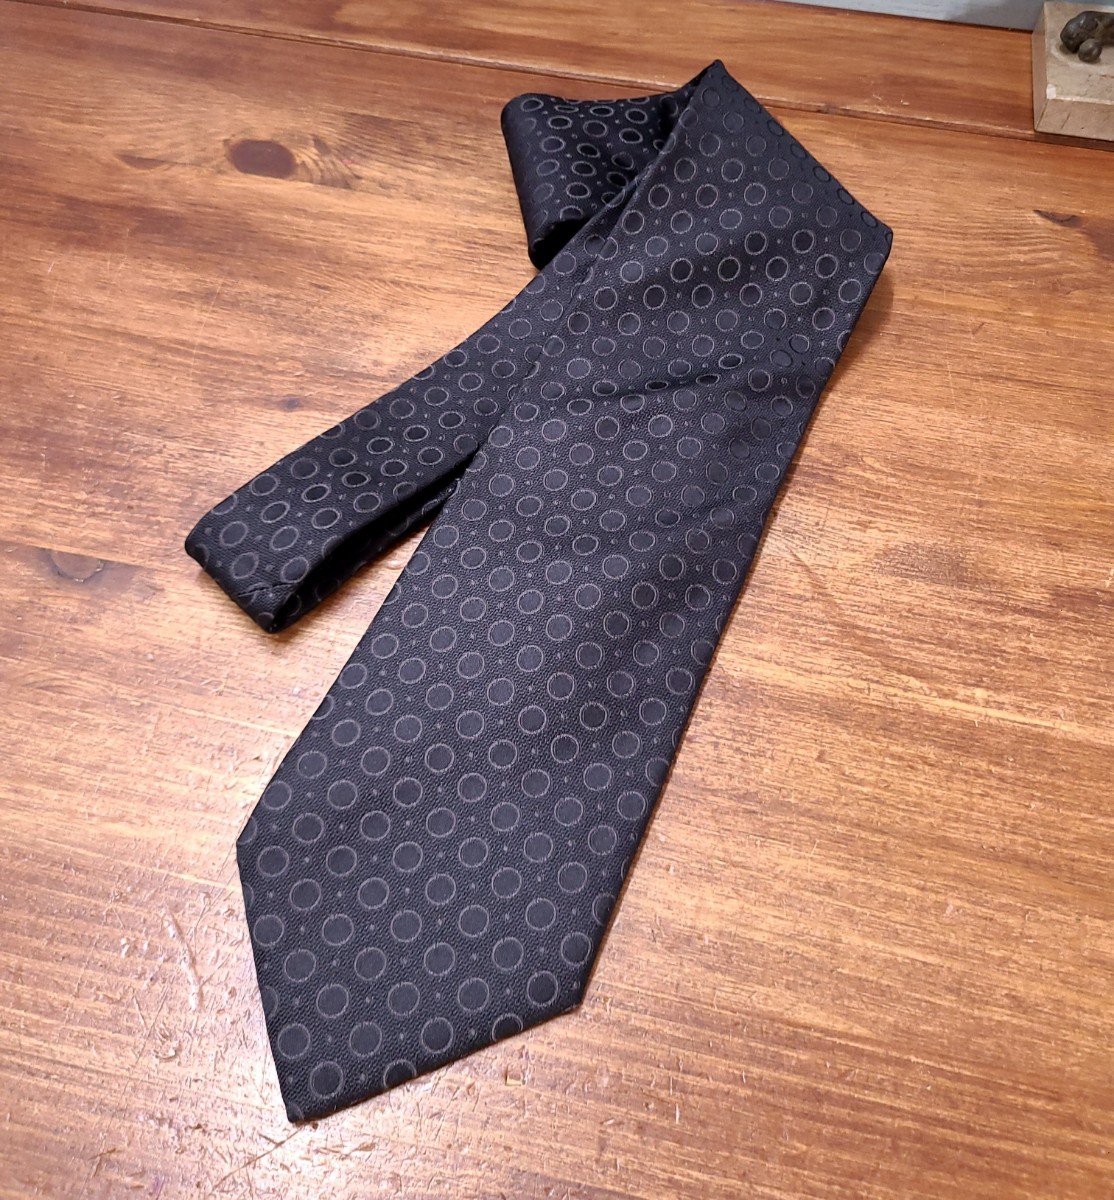  прекрасный товар *GIORGIO ARMANI Armani LUXURY шелк галстук точка рисунок оттенок черного мужской костюм Италия производства общий рисунок высококлассный 